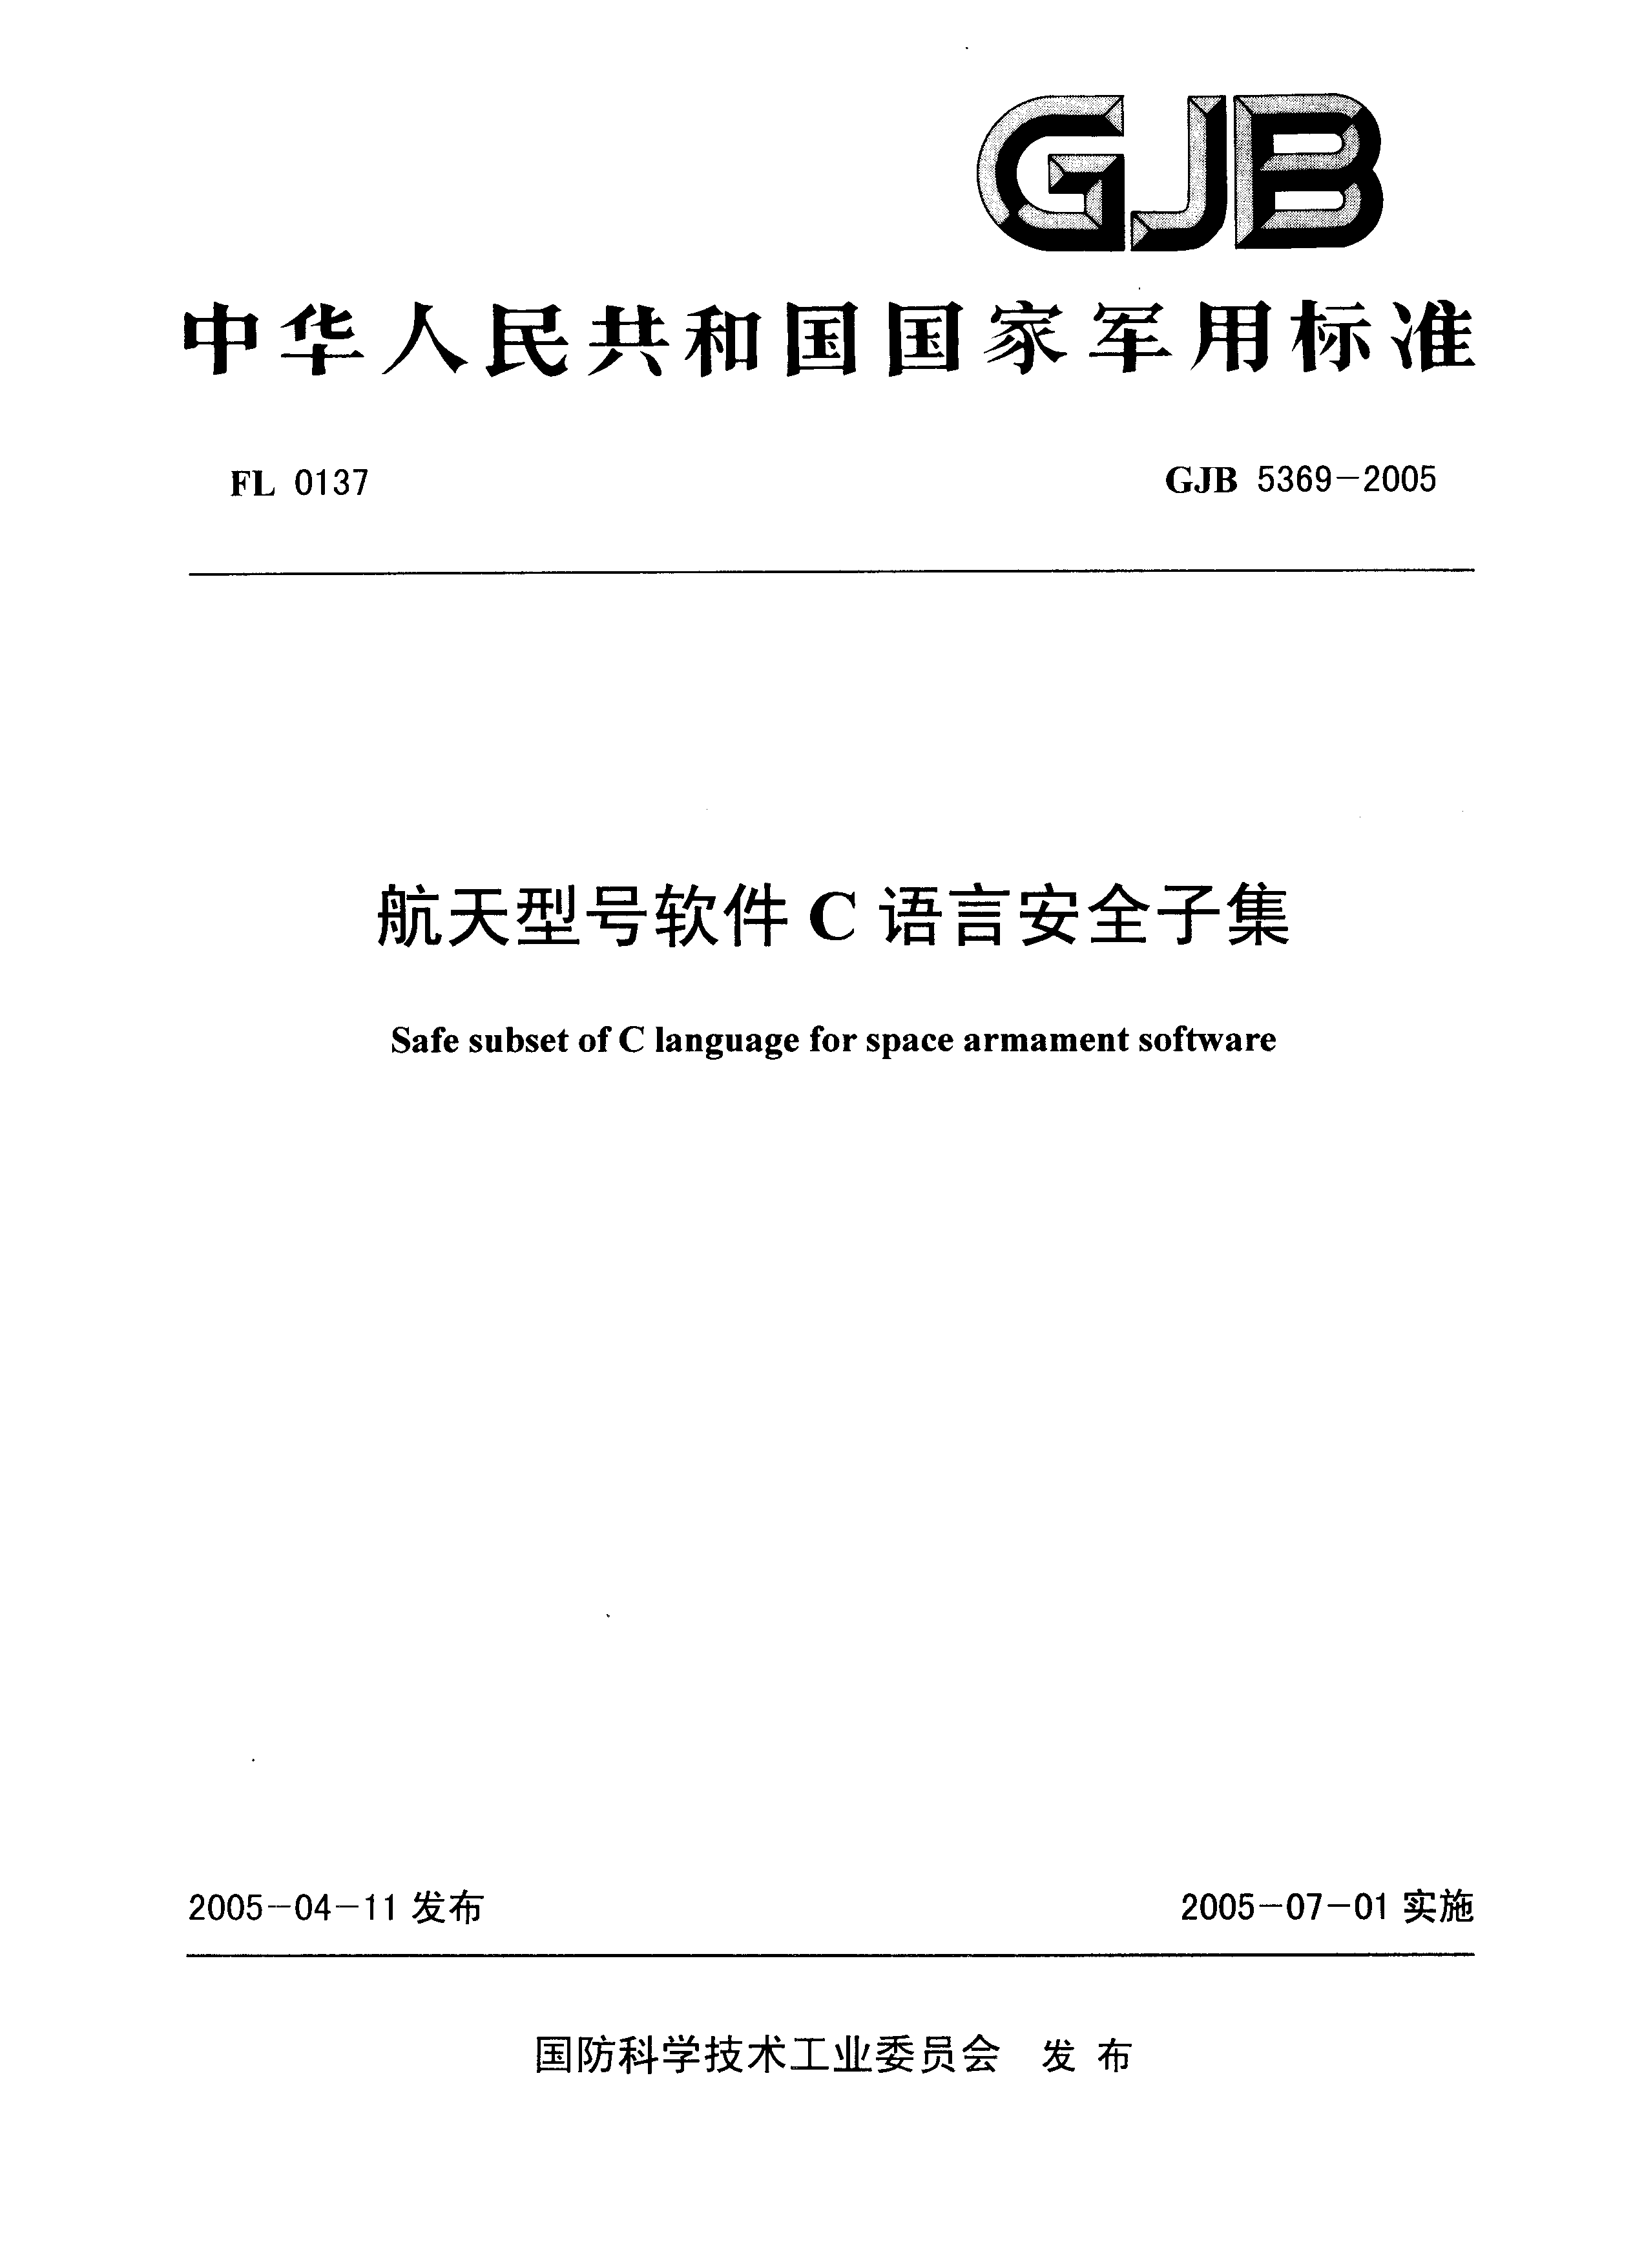 中华人民共和国国家军用标准GJB 5369-2005 航天型号软件C语言安全子集-电子图书馆社区-电子图书-FancyPig's blog